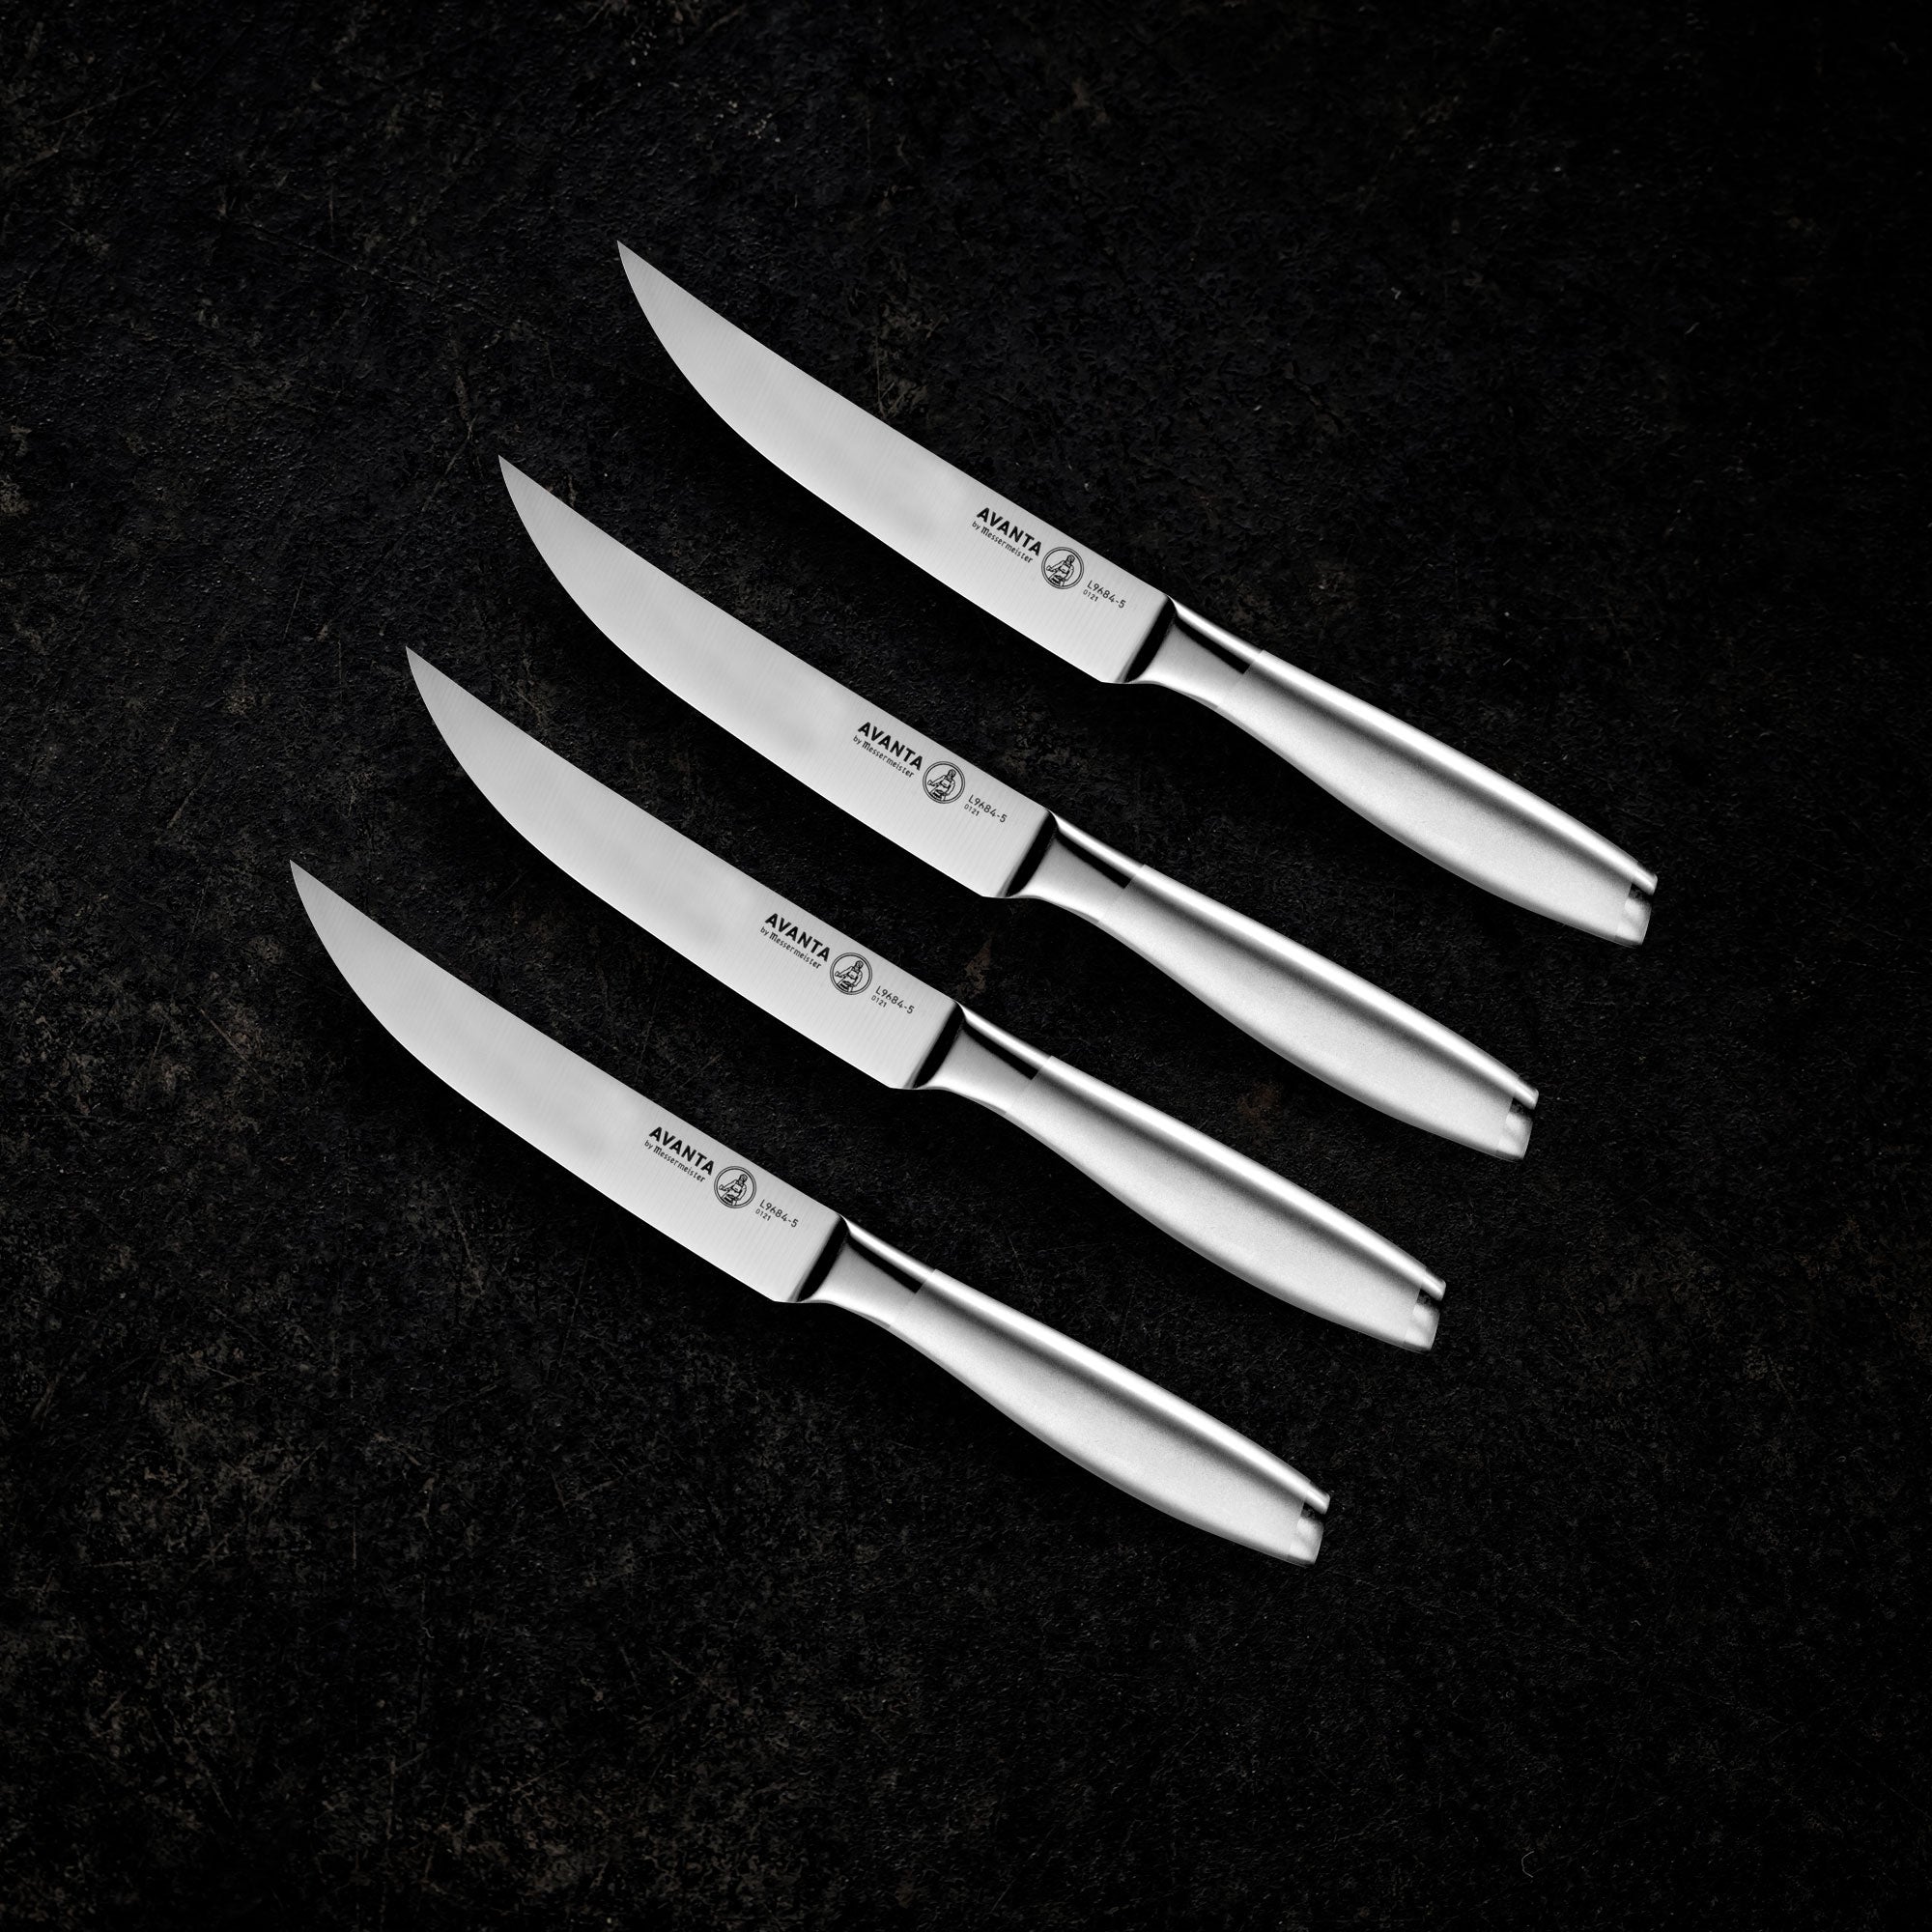 Cuisinart 4 Piece Triple Rivet Steak Knife Set - Black